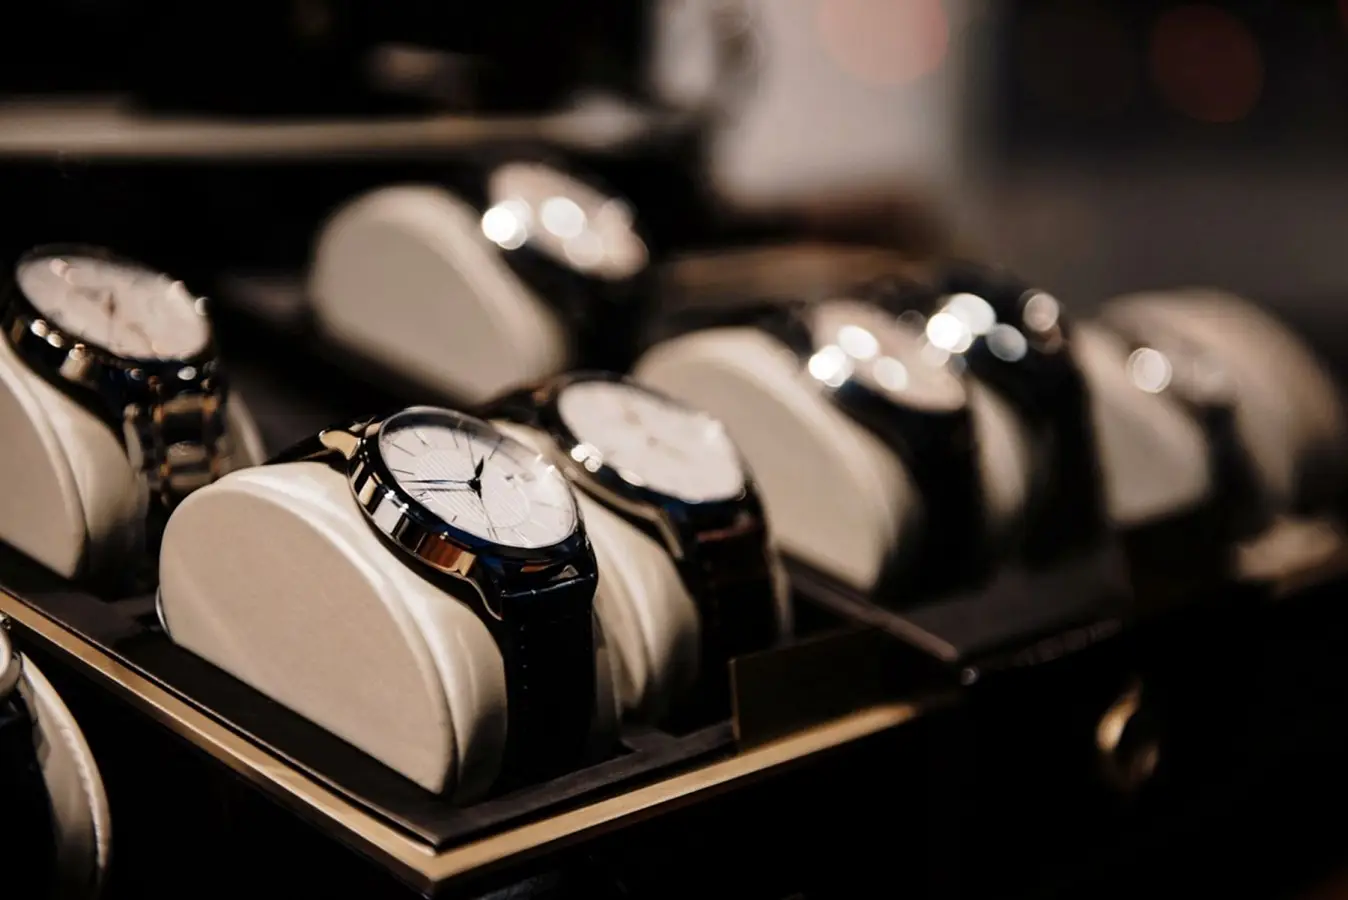 Inwestorów przybywa, a luksusowe zegarki tanieją. Dlaczego?